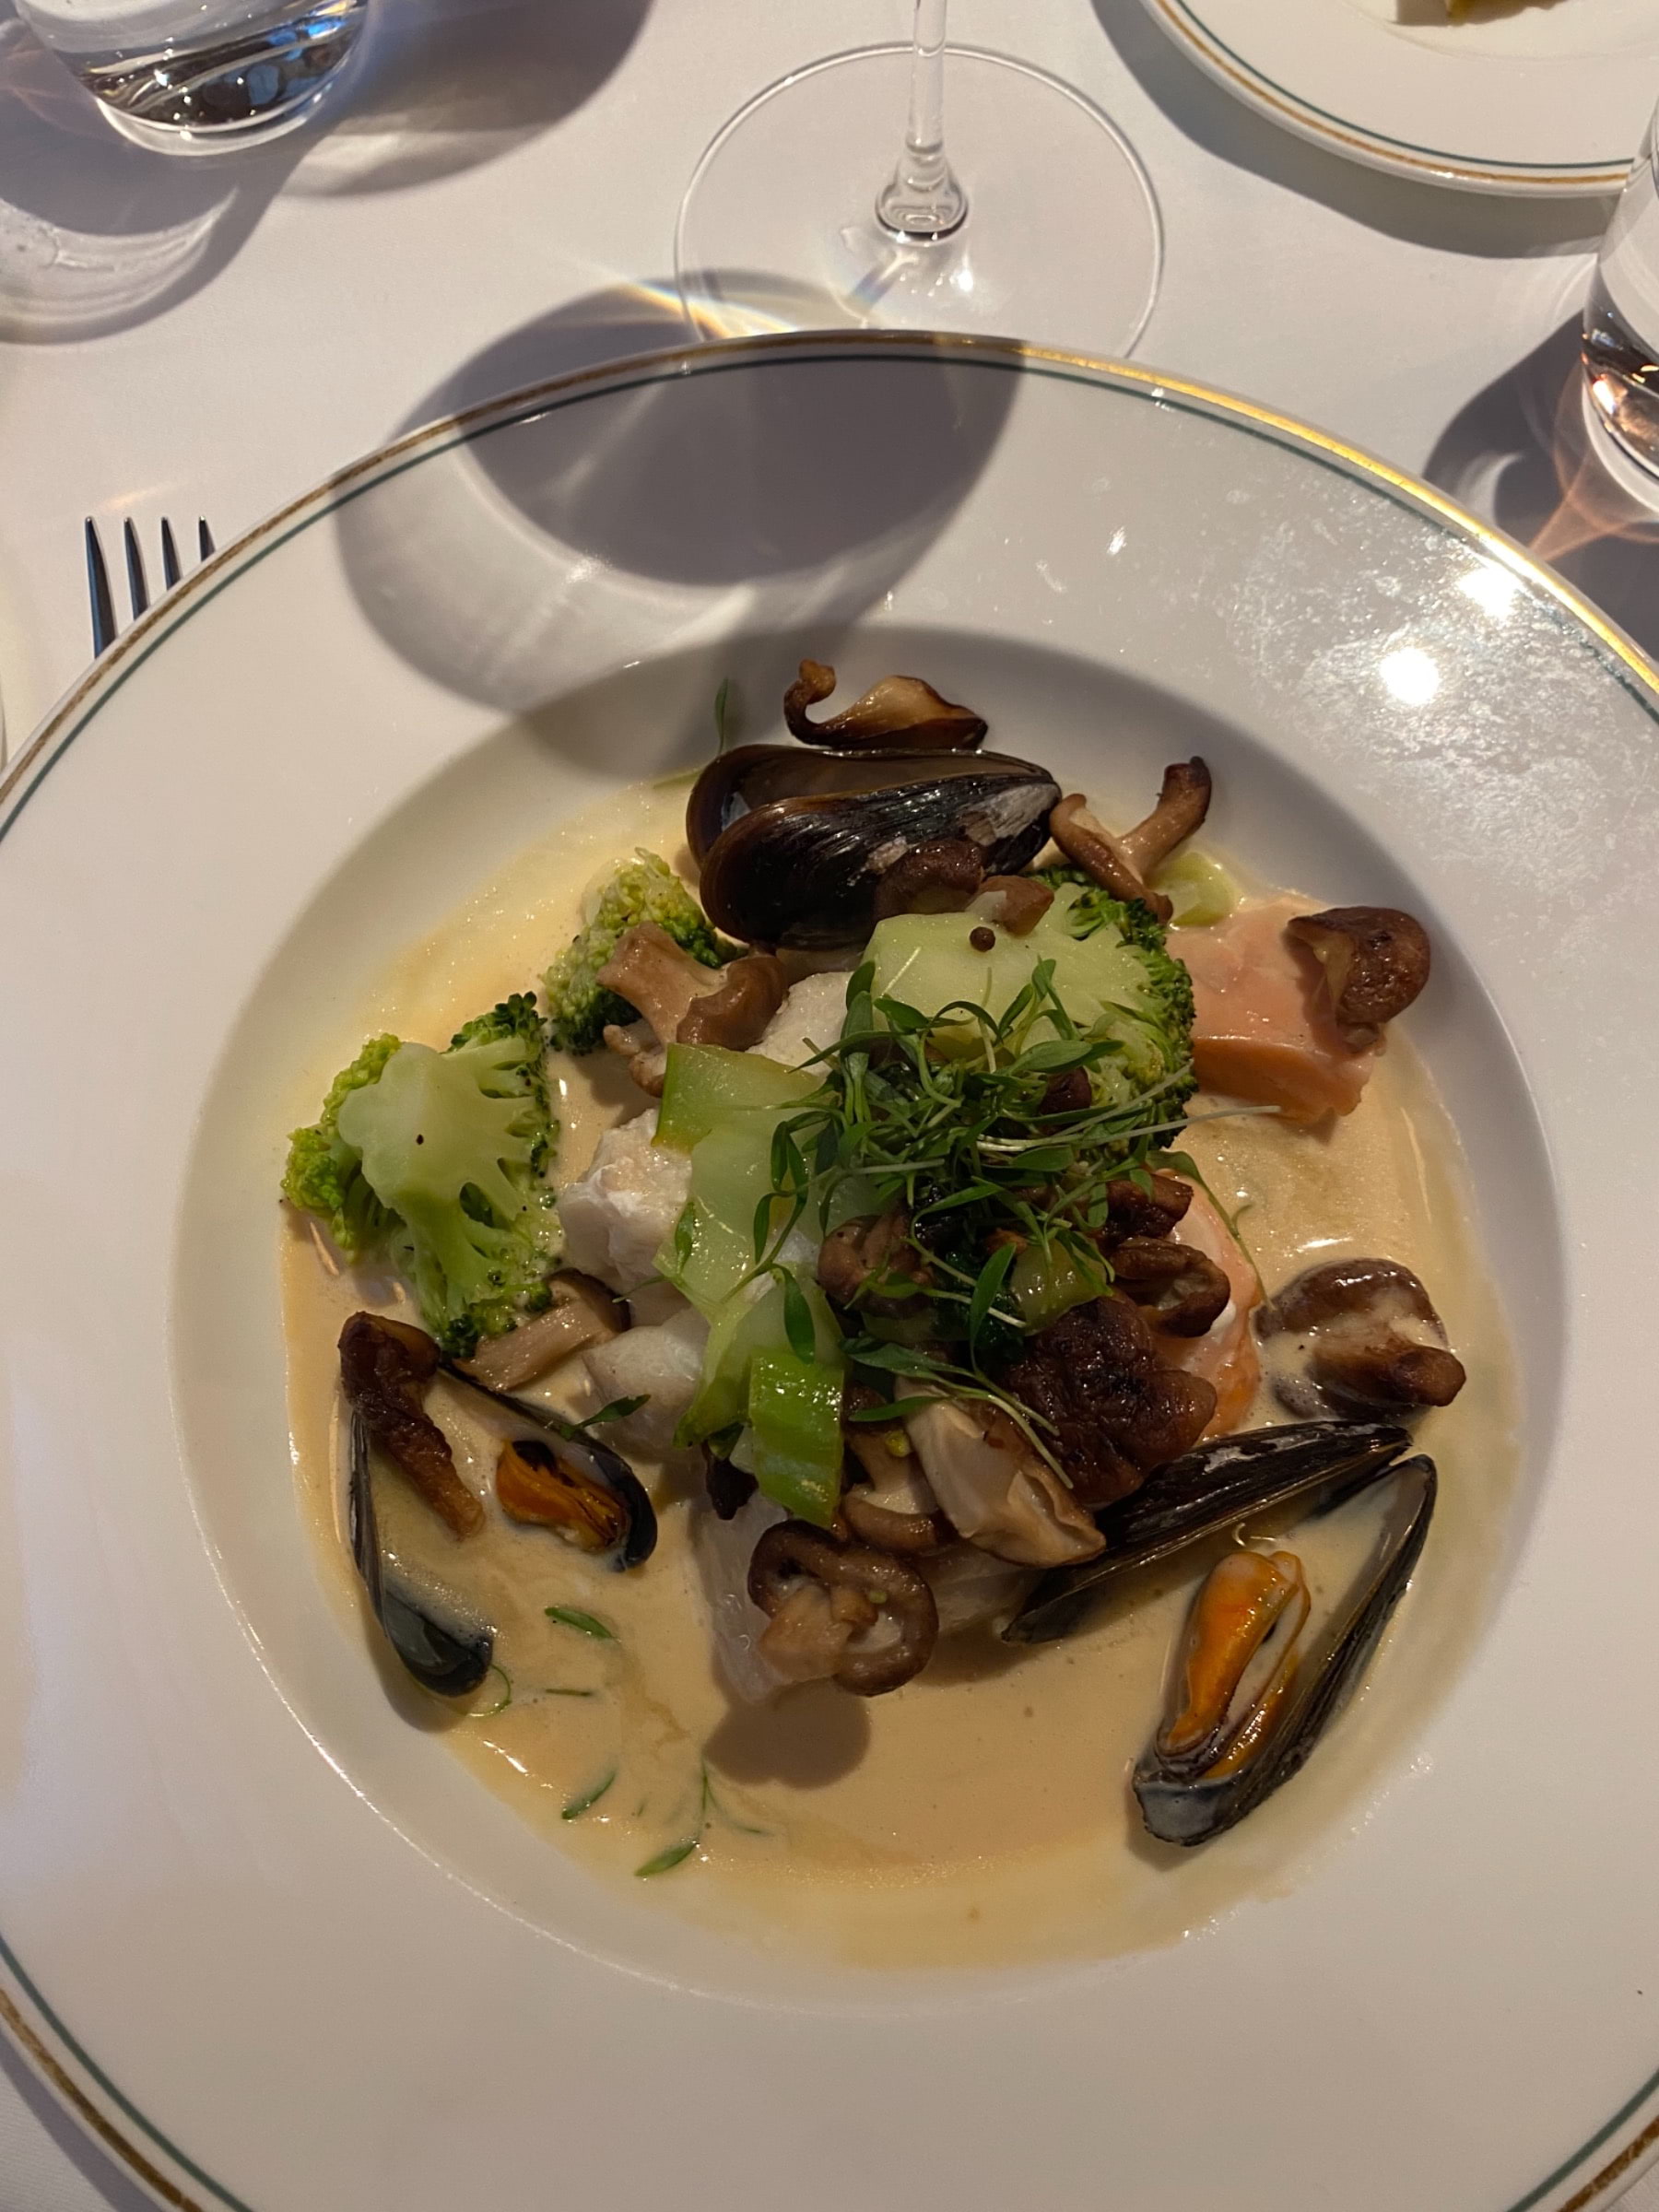 Dagens fisksoppa med torsk, lax, musslor och broccoli.  – Bild från Brasserie Astoria av Sofie L.